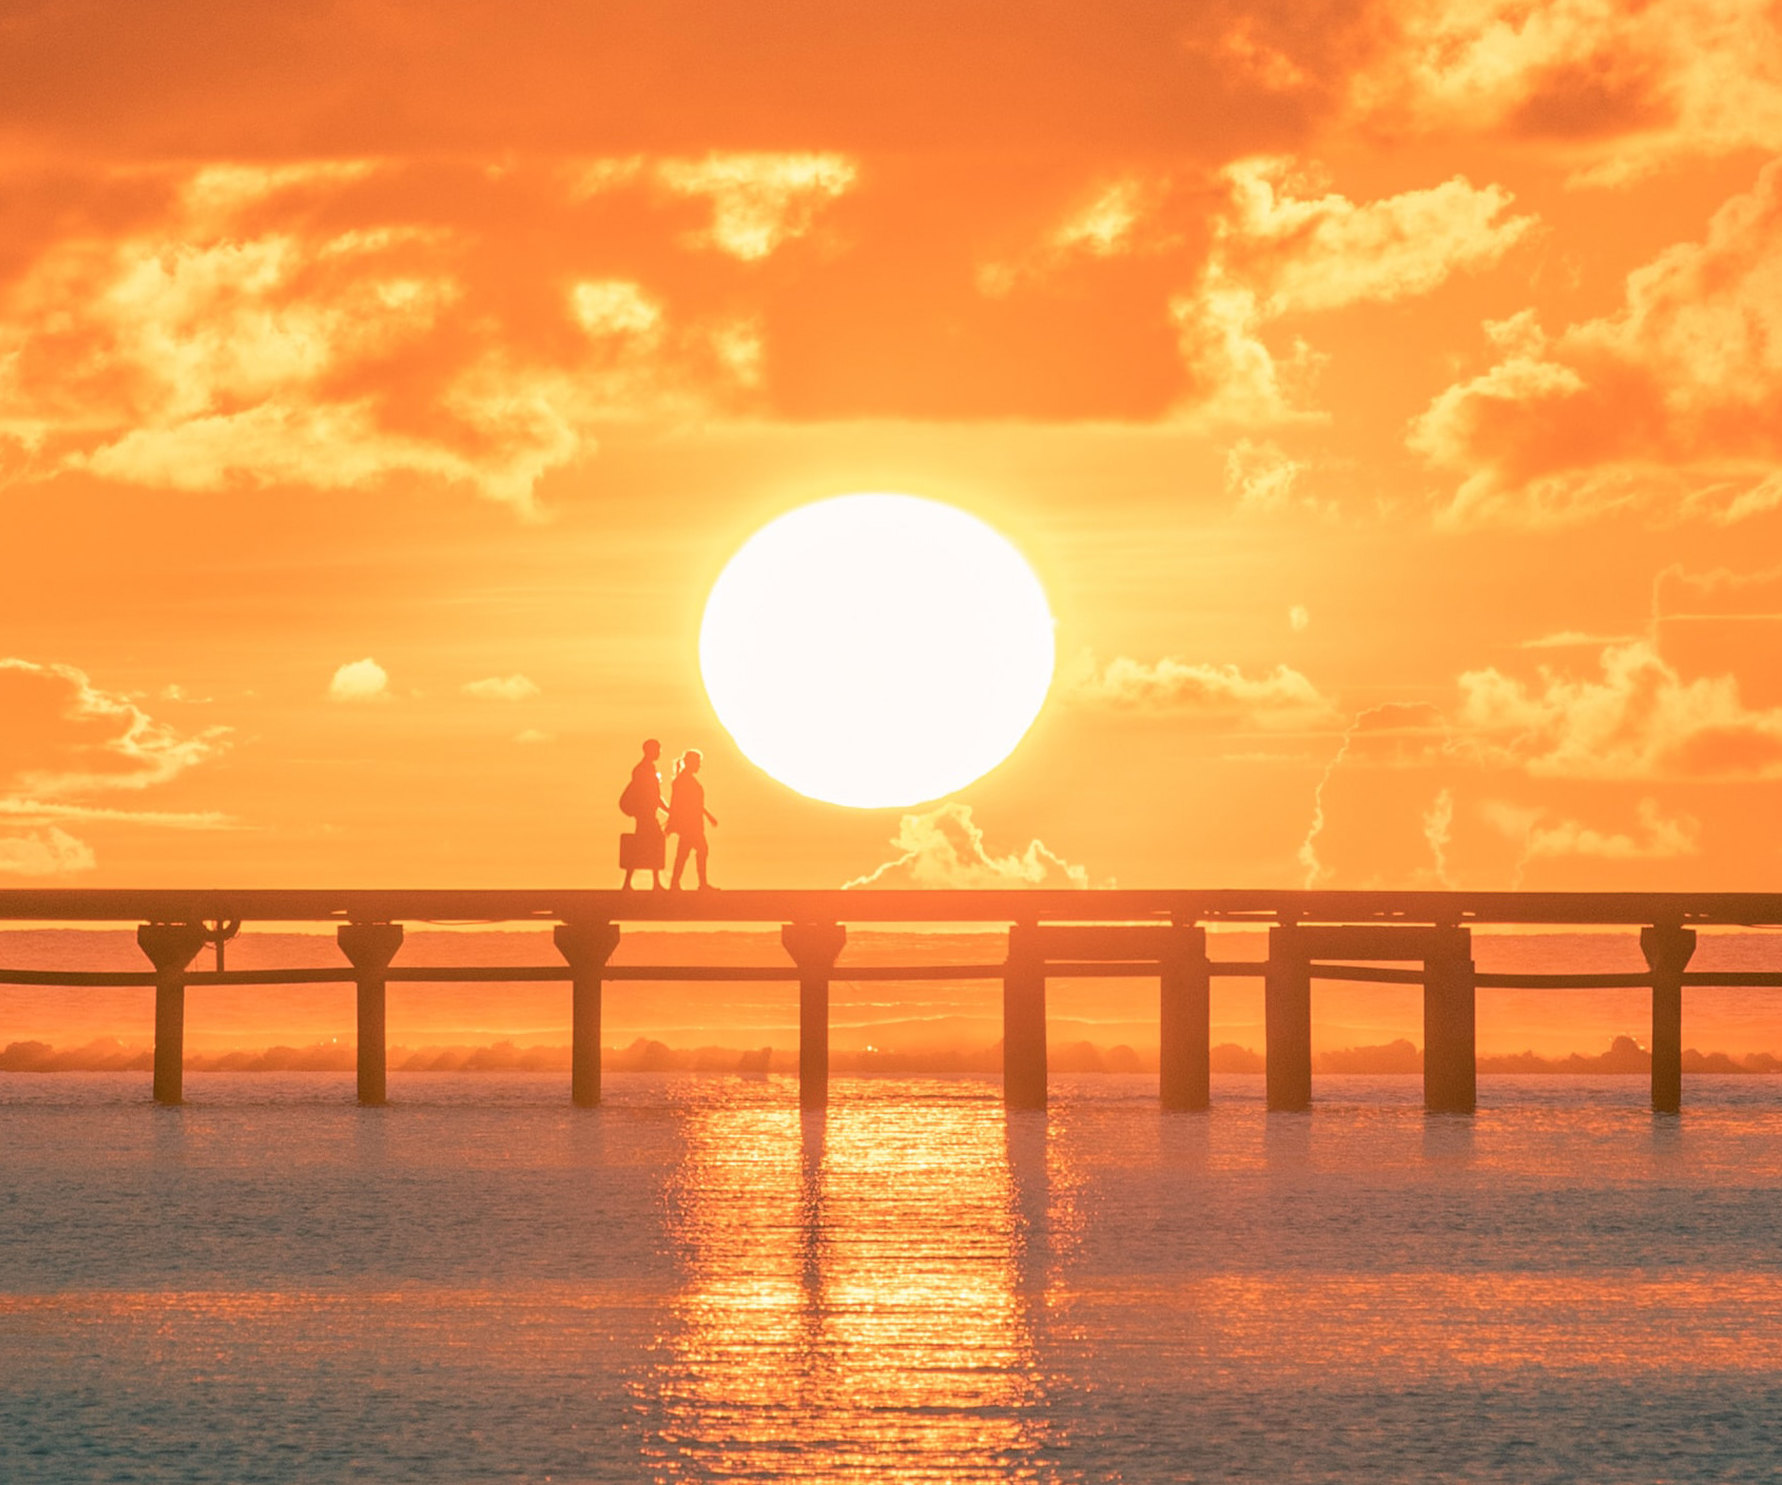 Солнечный календарь отношений: как будет развиваться ваш роман с точки зрения астрологии